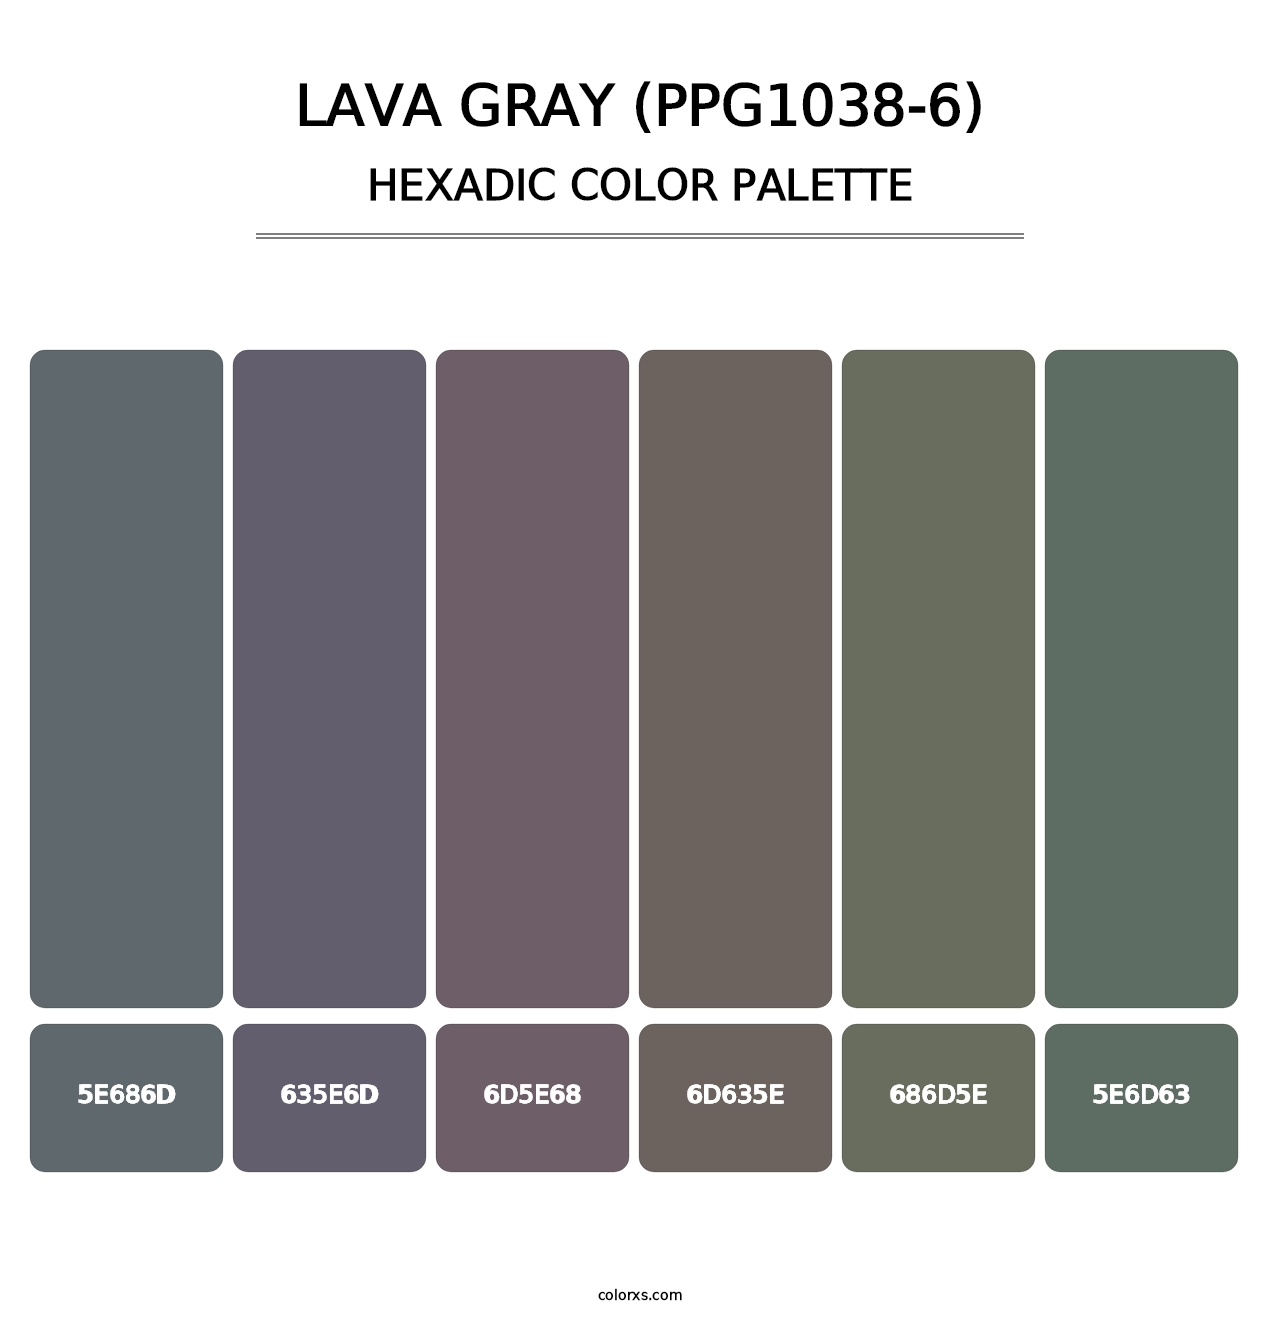 Lava Gray (PPG1038-6) - Hexadic Color Palette